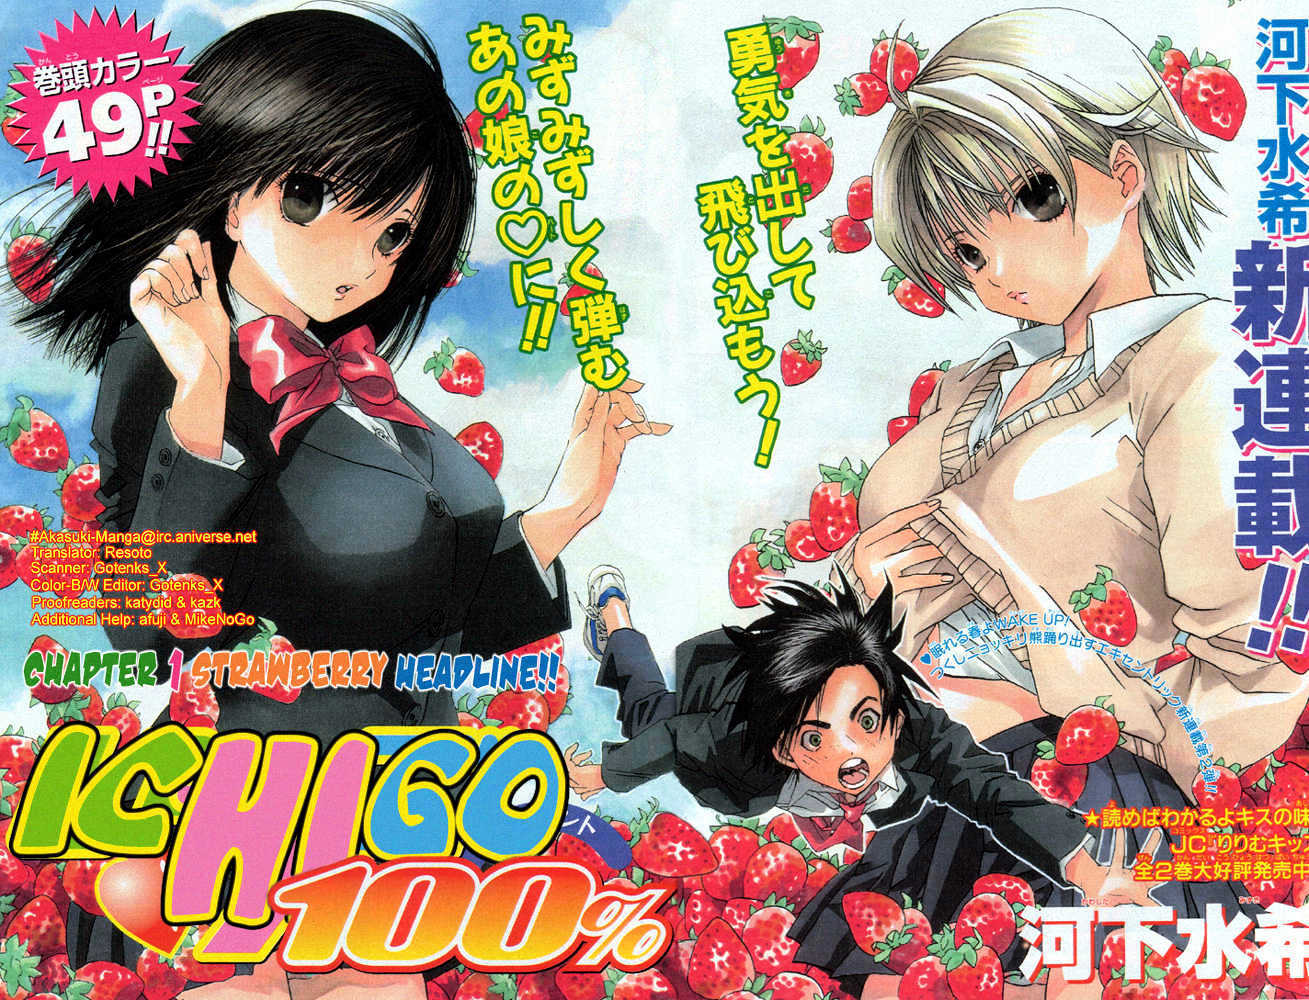 Ichigo 100% Chapter 1 : Strawberry Shortcake Alert!! - Picture 3